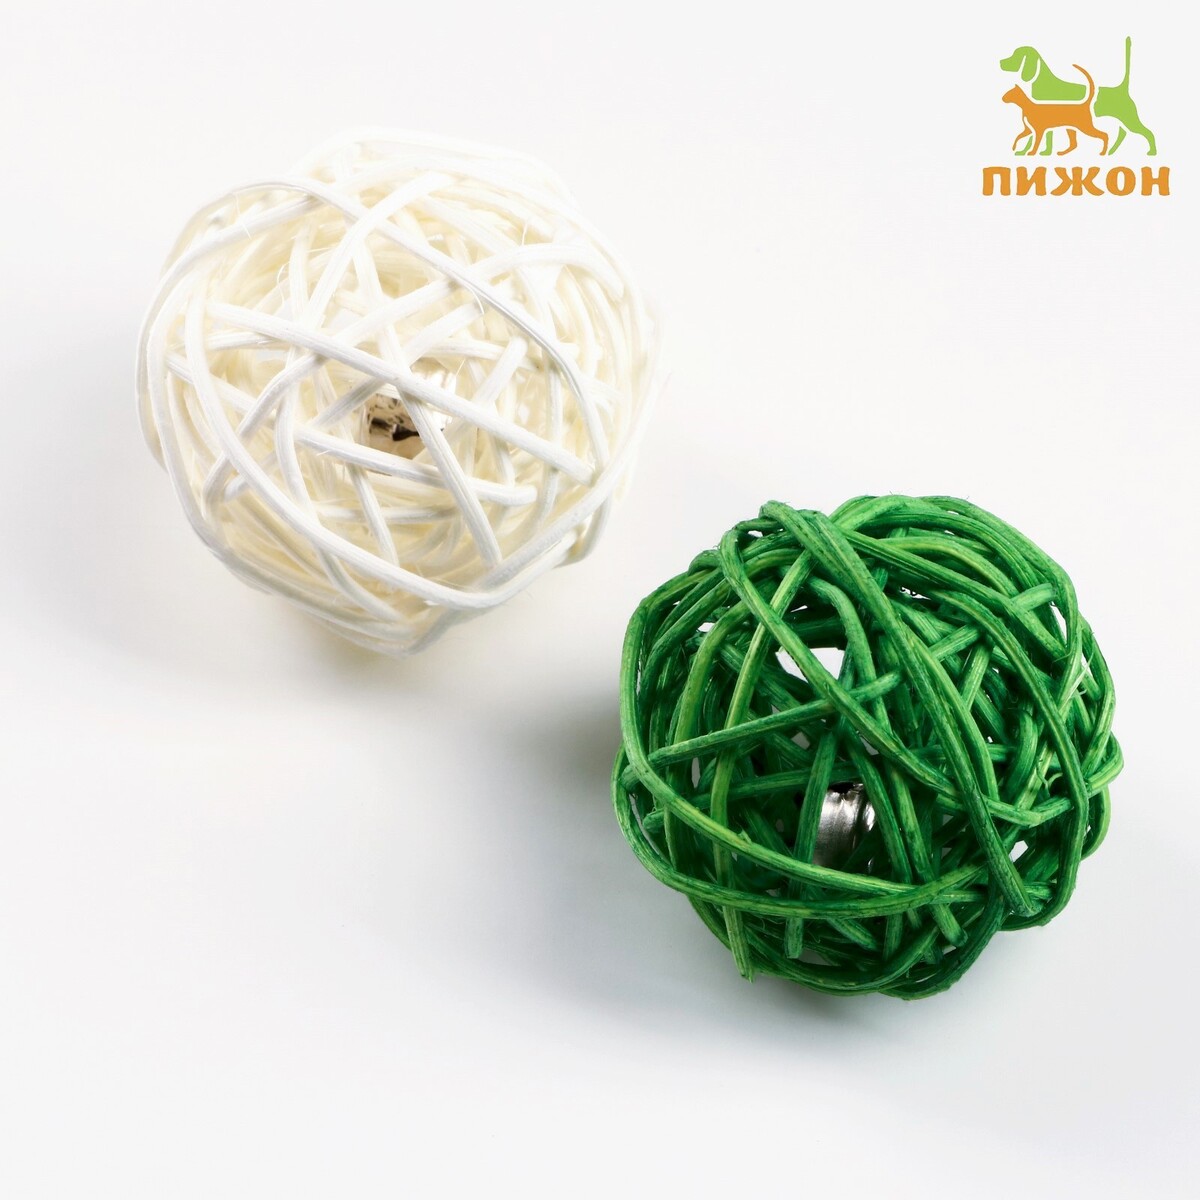 Набор из 2 плетеных шариков из лозы с бубенчиком, 5 см, белый/зеленый